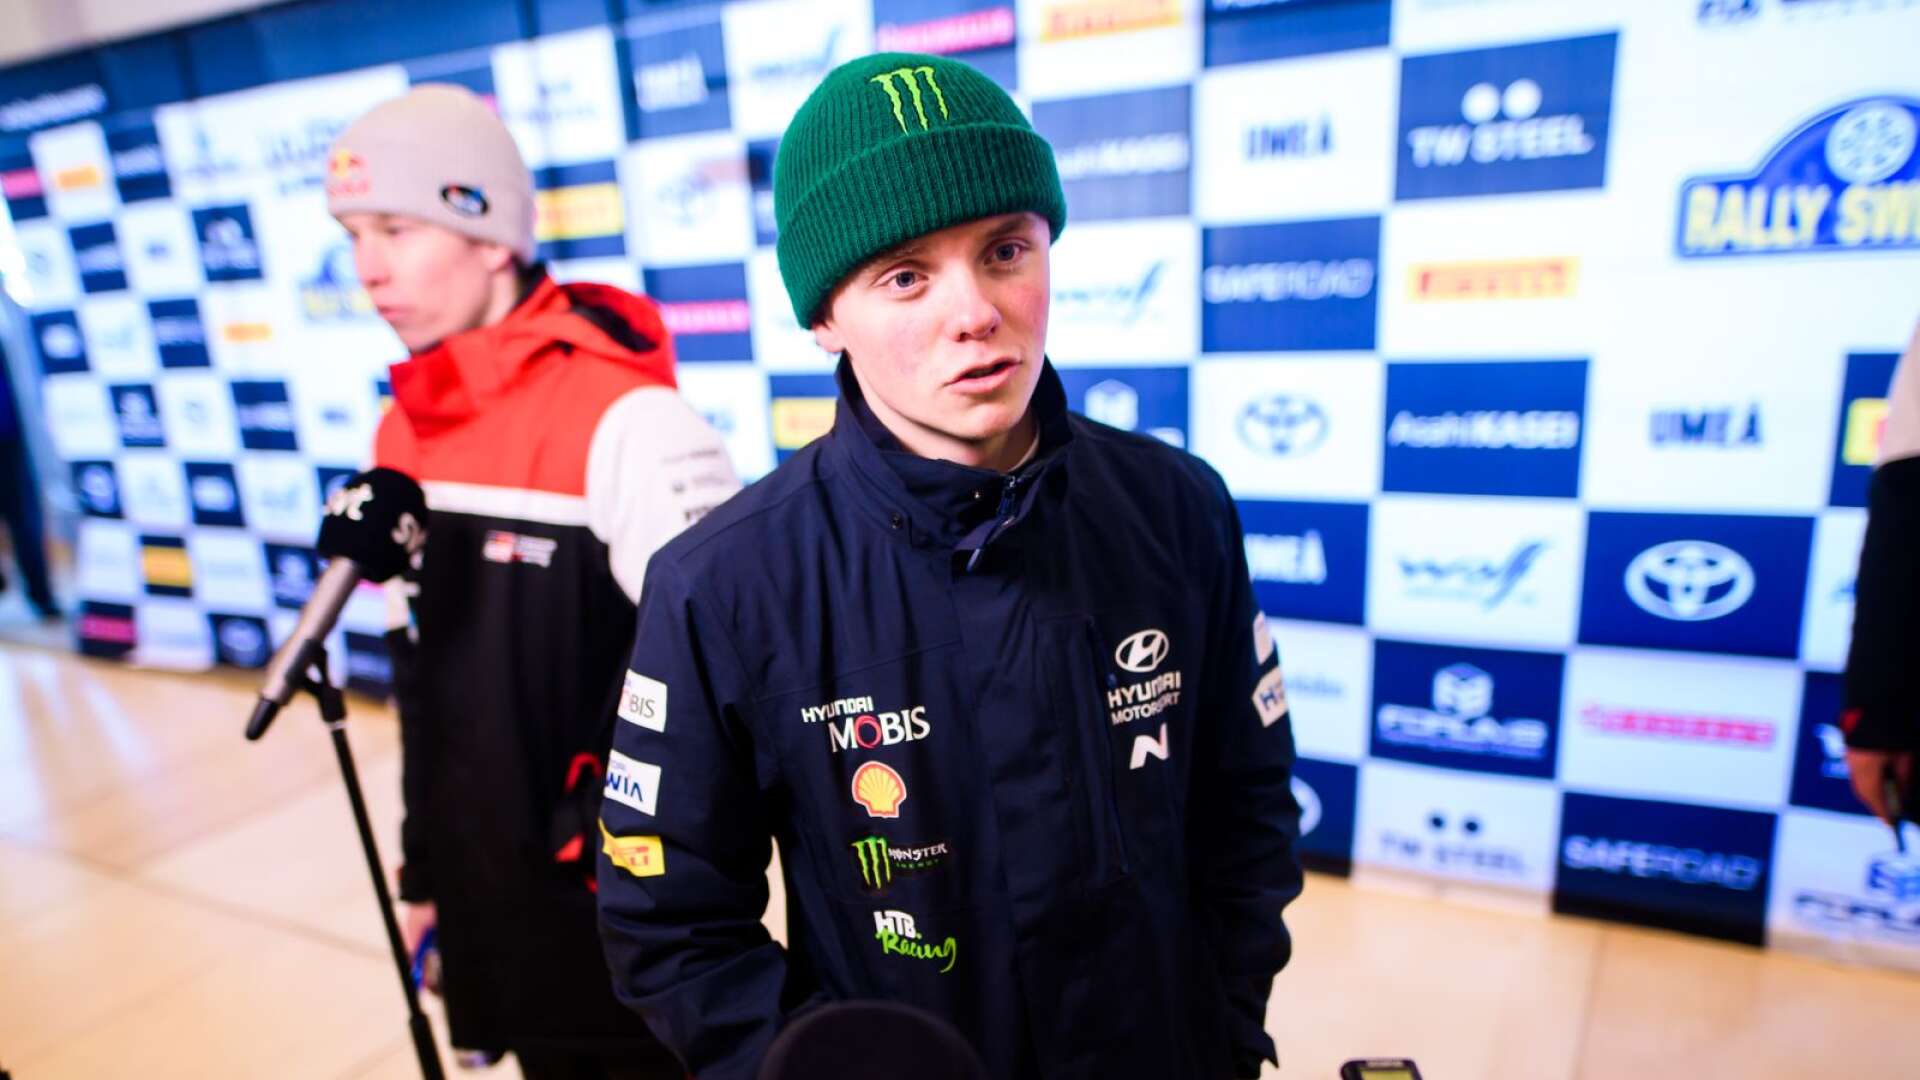 Oliver Solberg slutade sexa i Svenska rallyt. I bakgrunden syns segraren Kalle Rovanperä.